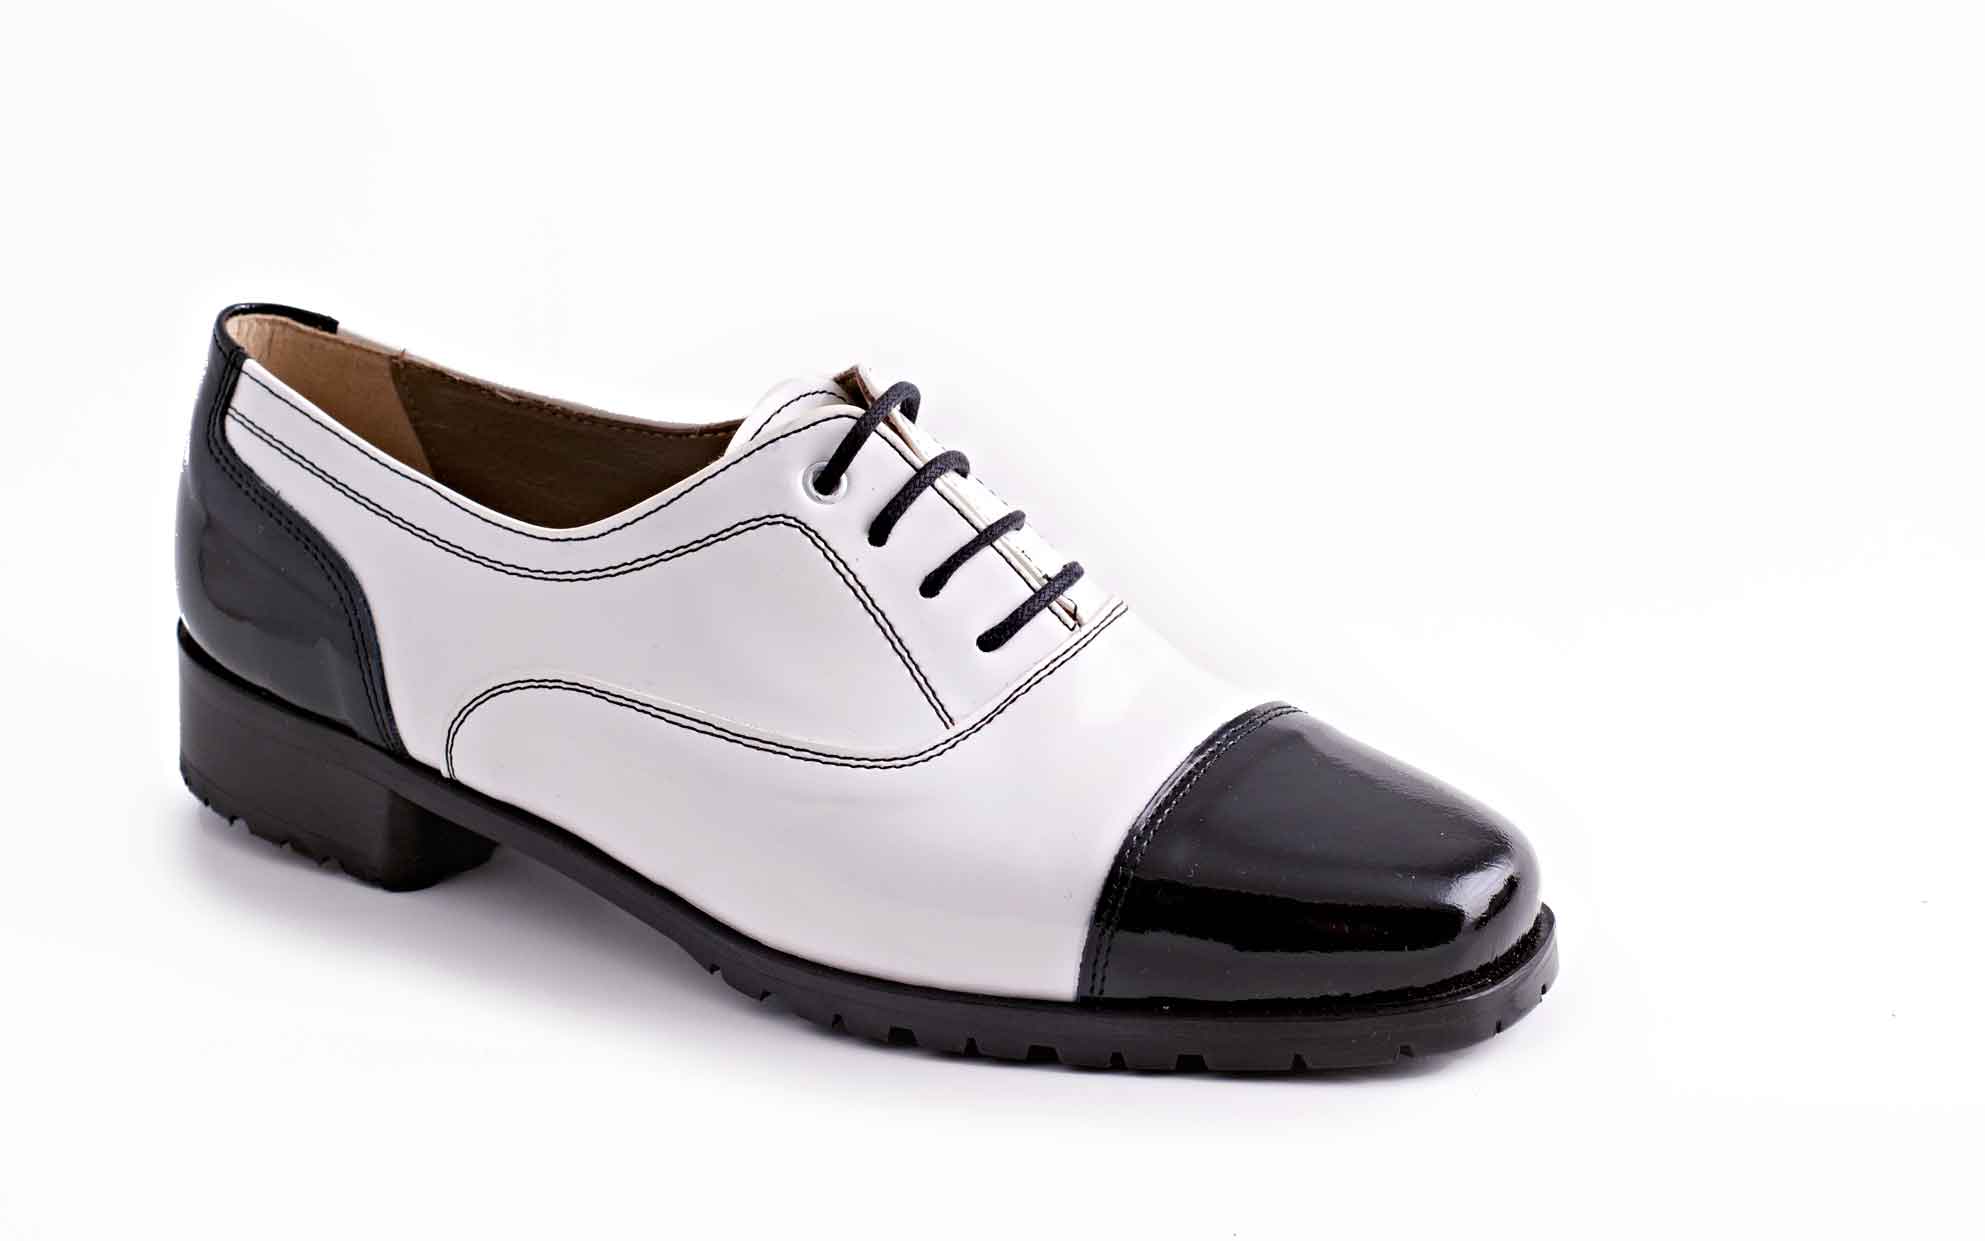 Zapato modelo Chrarlí, en charol negro y blanco.